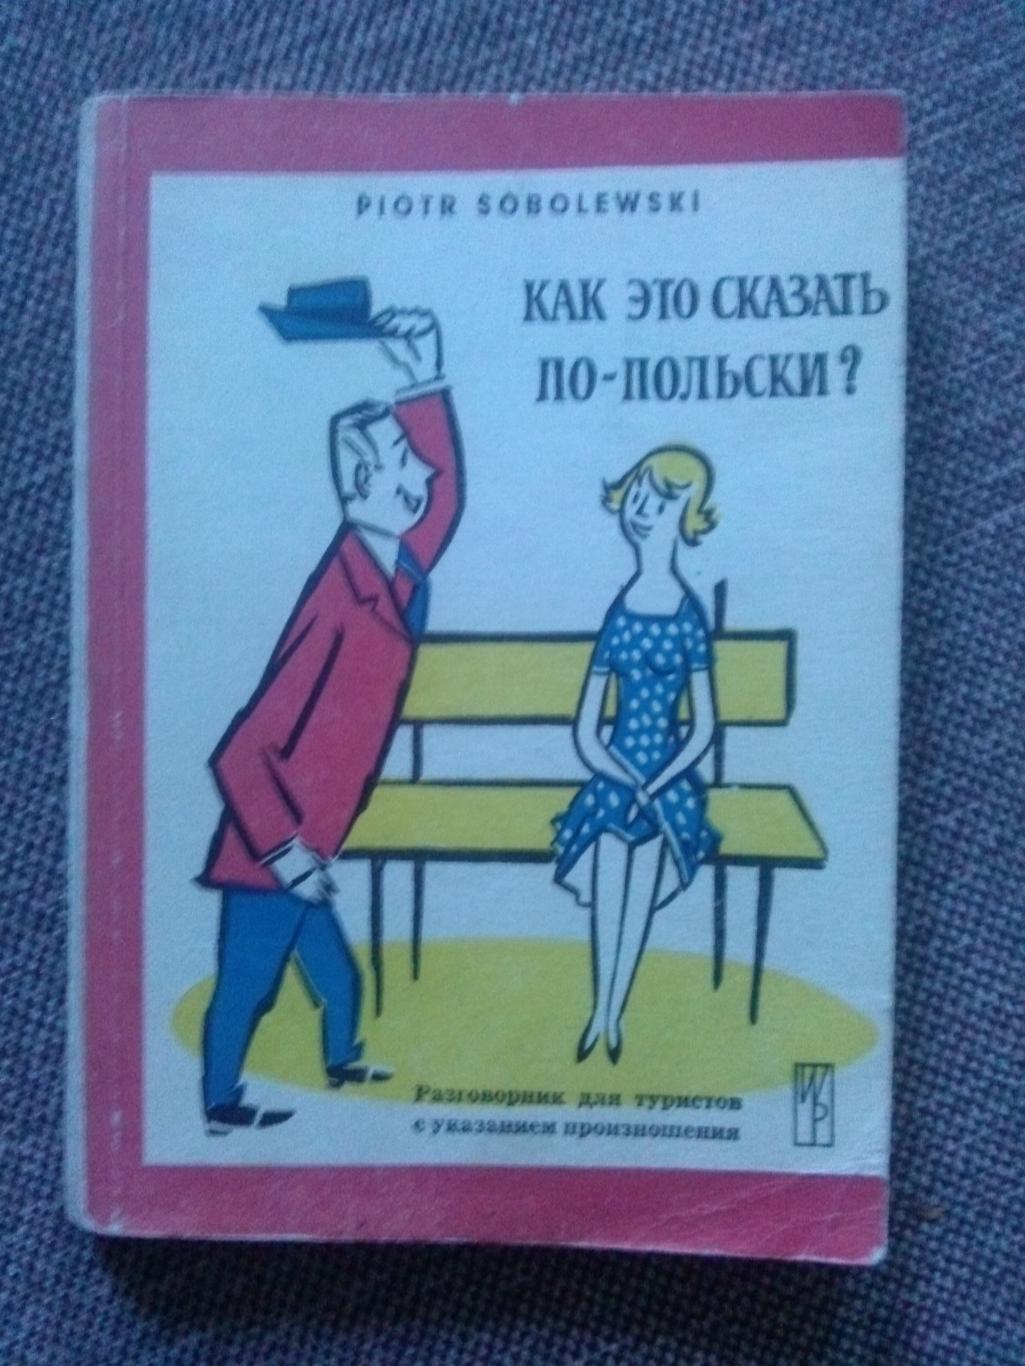 Польско - русский словарь (разговорник) Как это сказать по польски ? 1963 г.